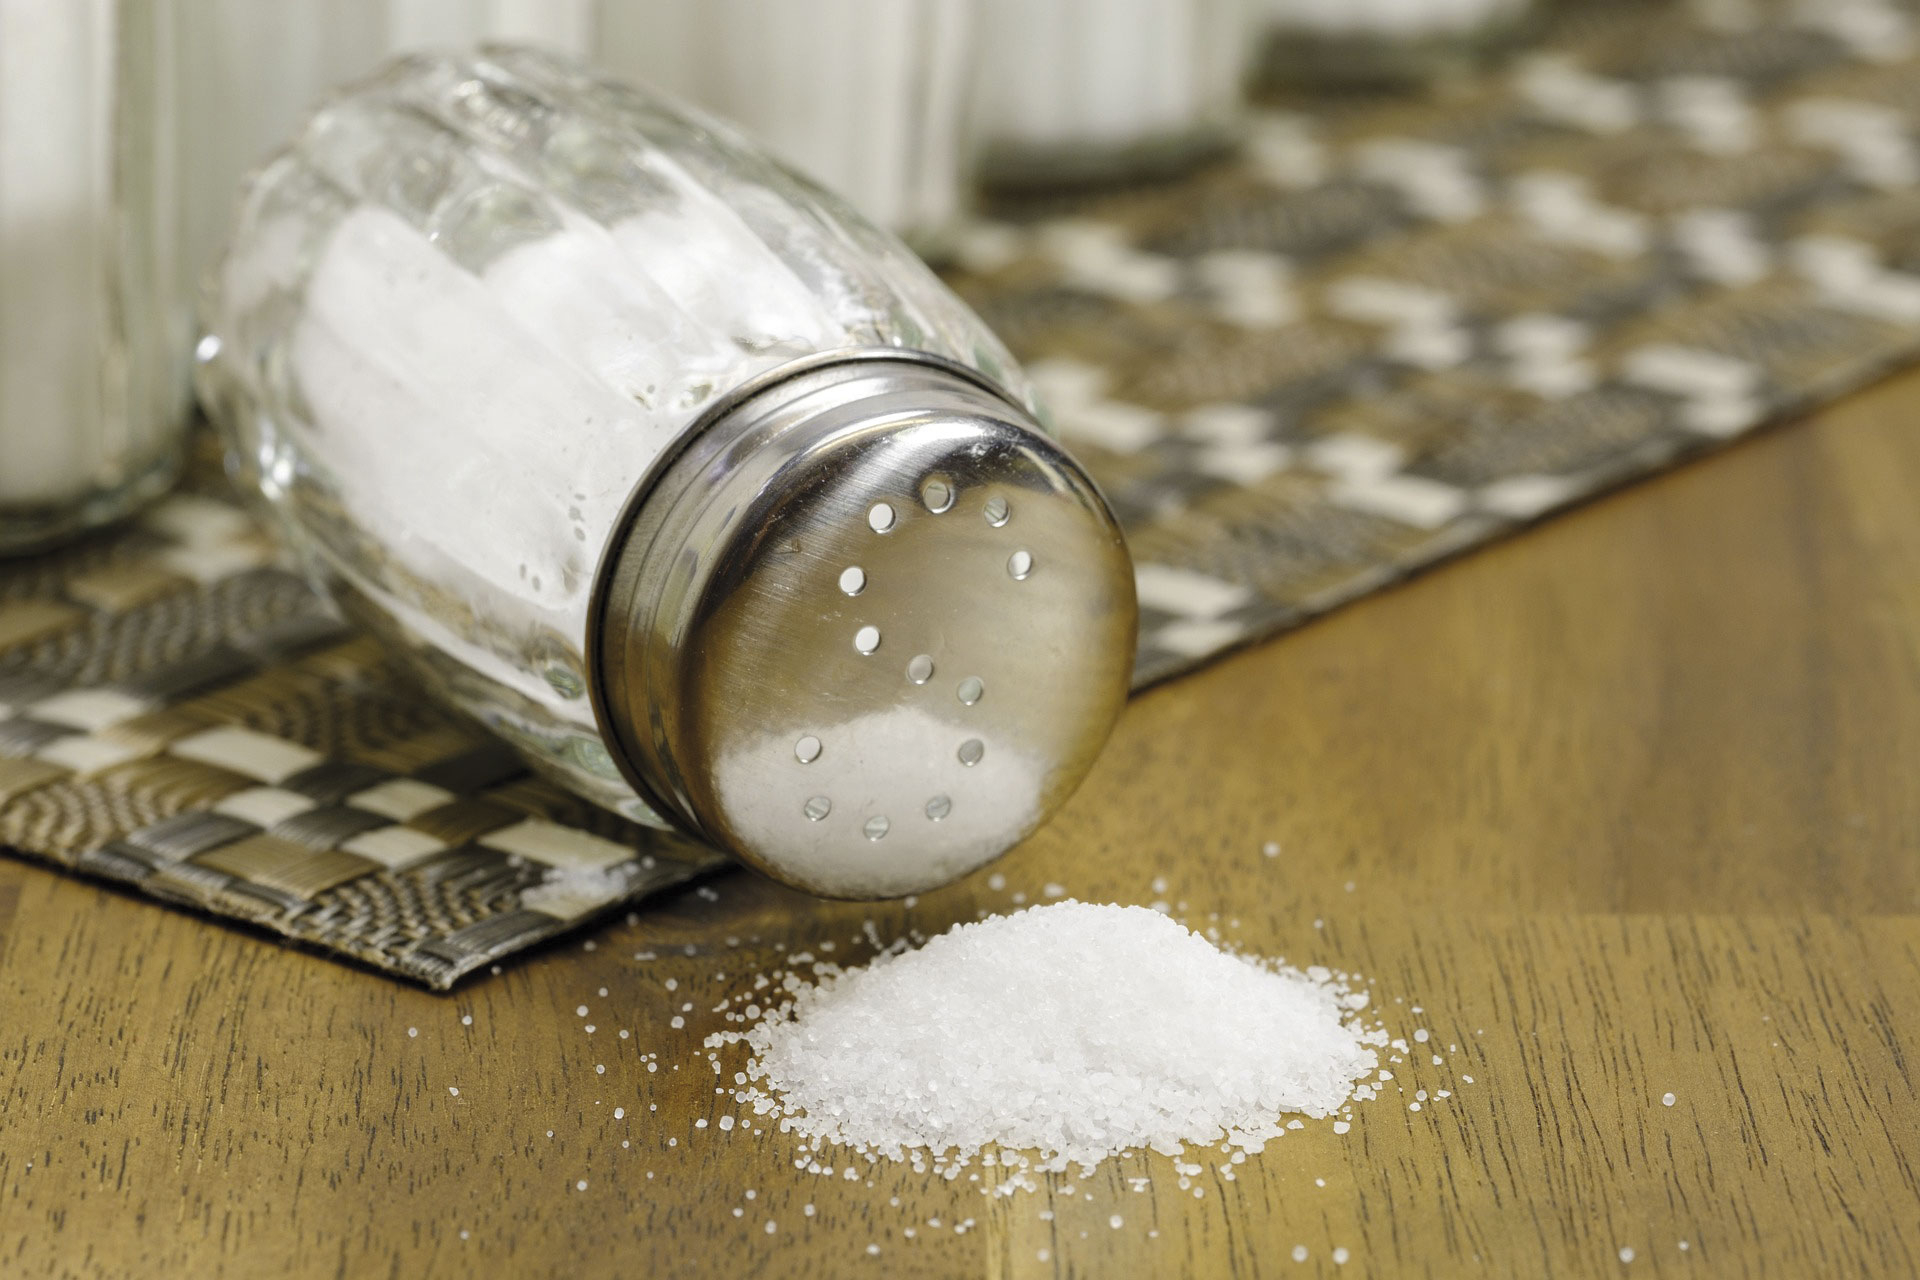 Veroorzaakt zout of suiker hoge bloeddruk? - BioGezond: infoblad